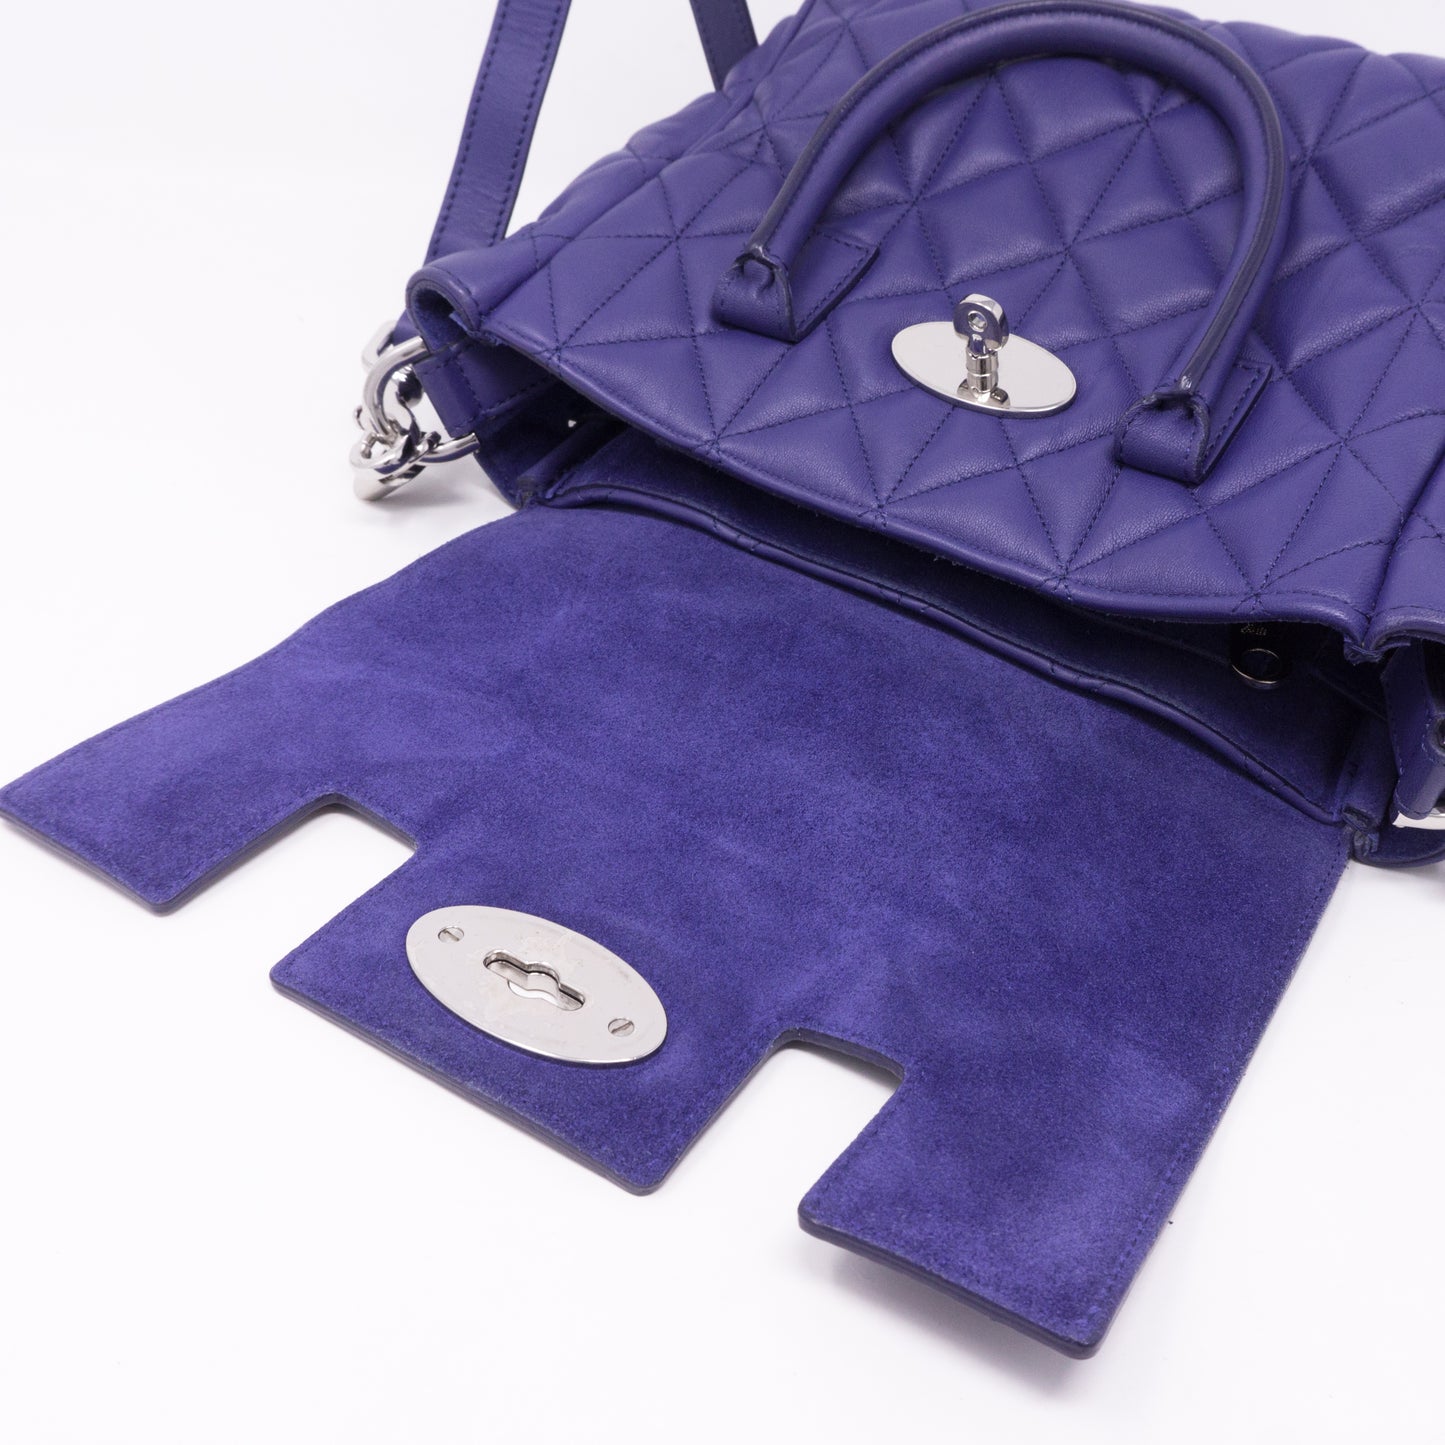 Cara Delevingne Mini Backpack Indigo Leather